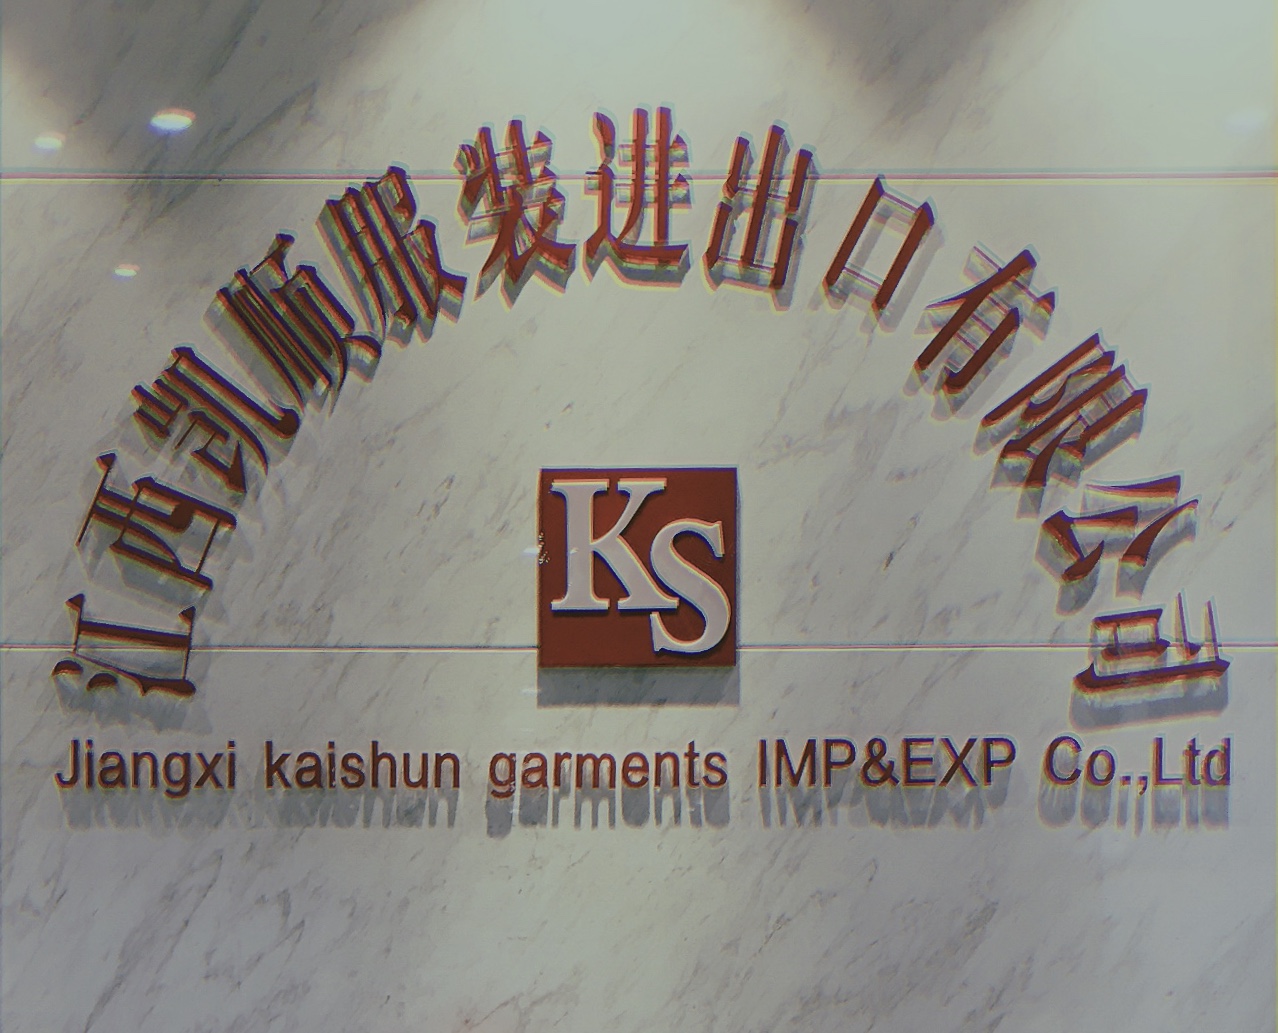 Jiangxi Kaishun Garments IMP & EXP Co.,Ltd